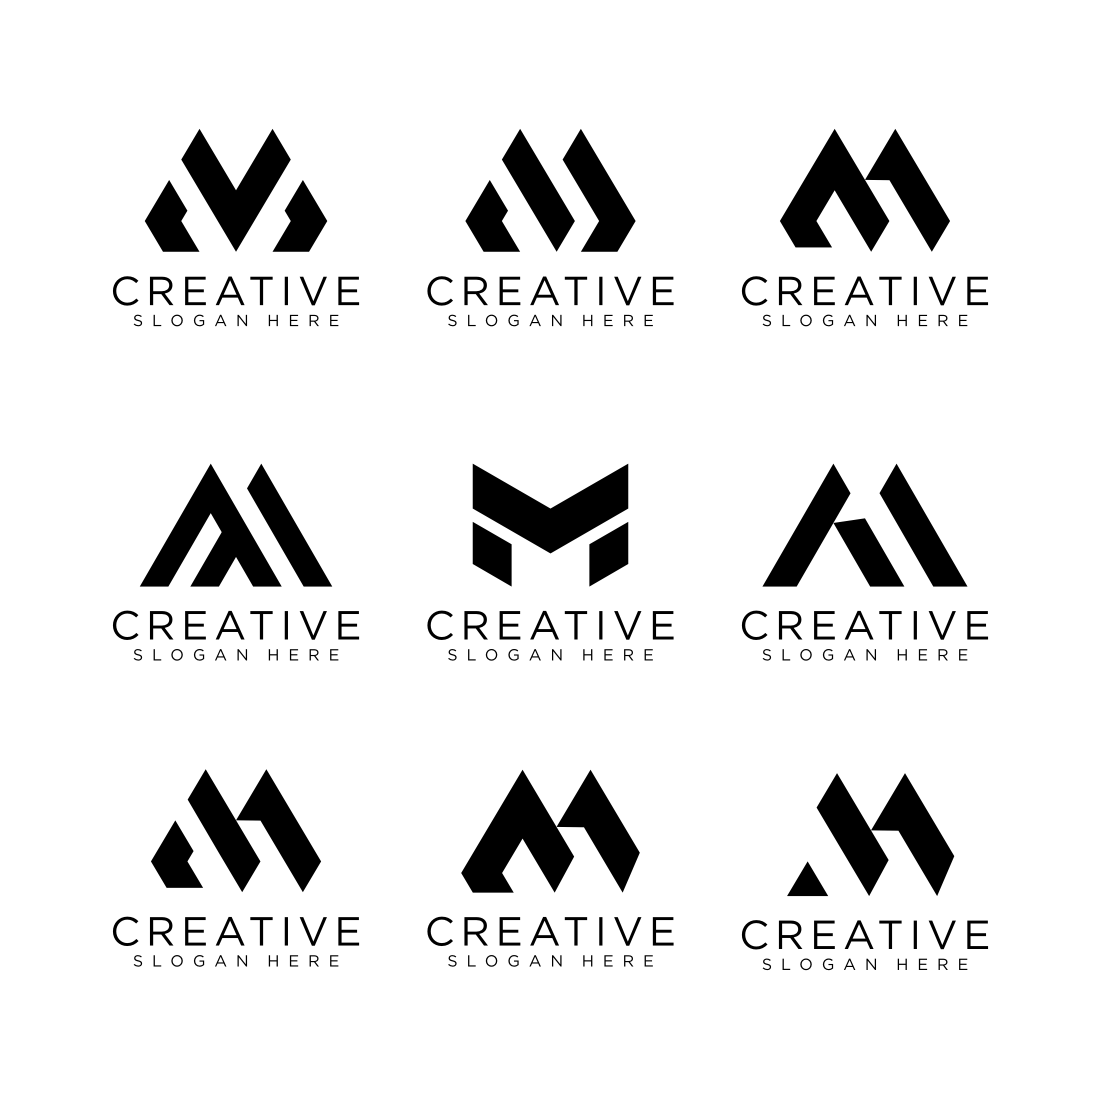 Monogram Am  Logo design set, Monogram logo design, Text logo design